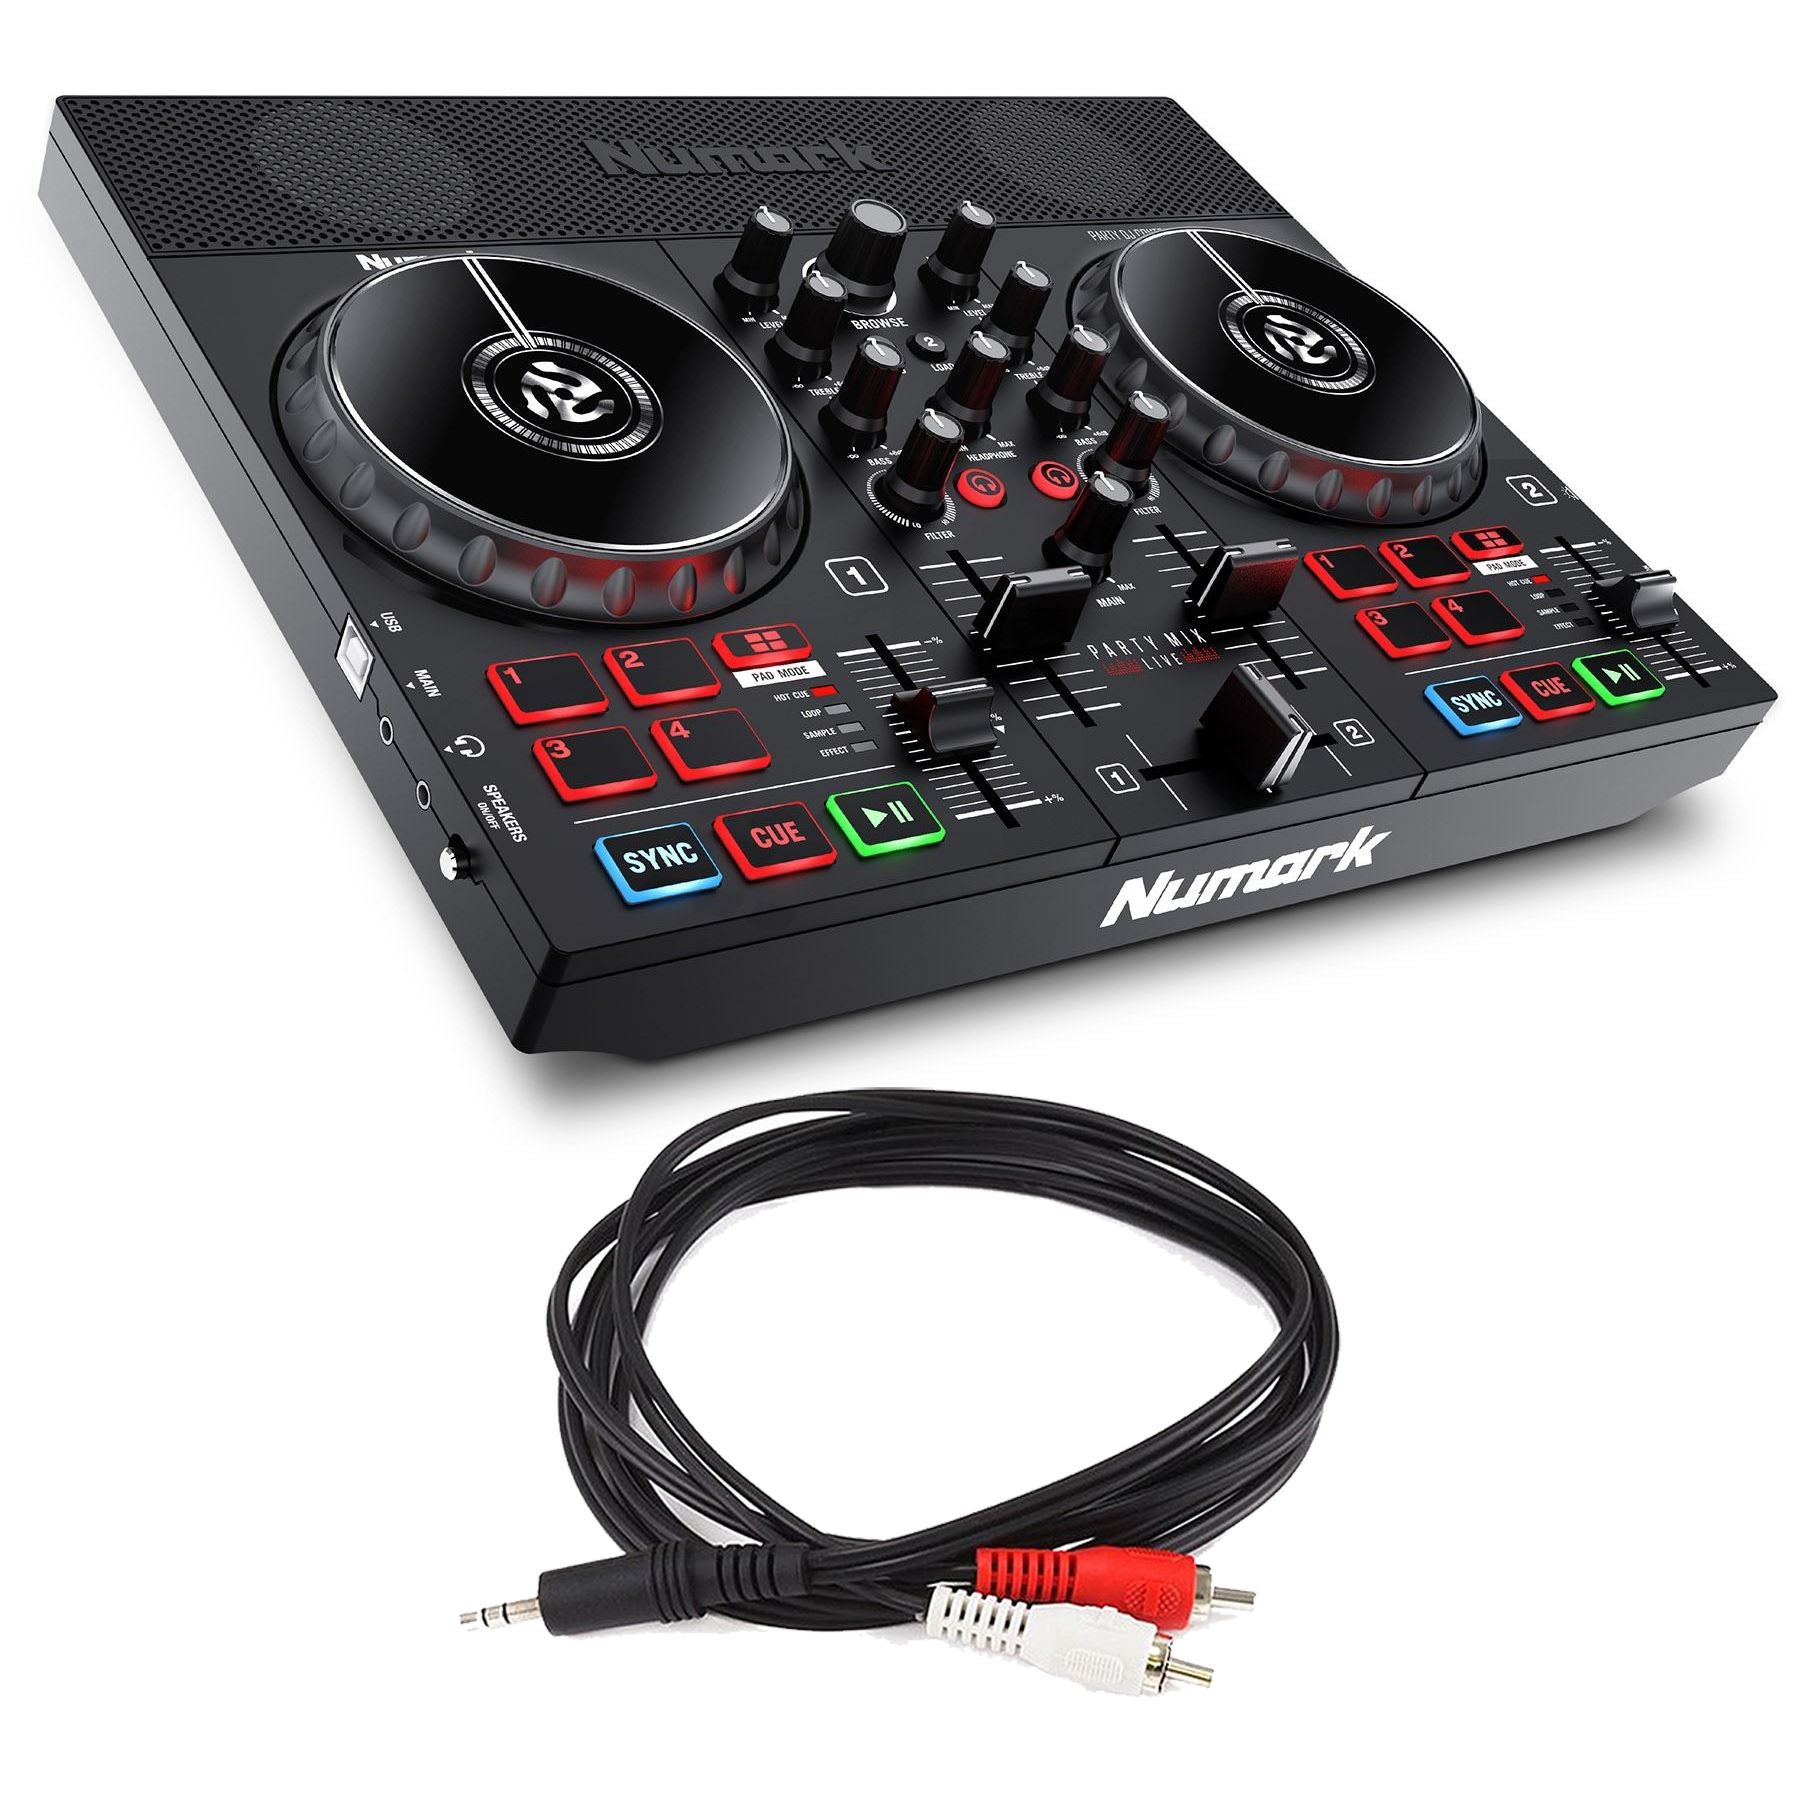 Numark Party Mix Live DJ Controller Bundle with 1/8